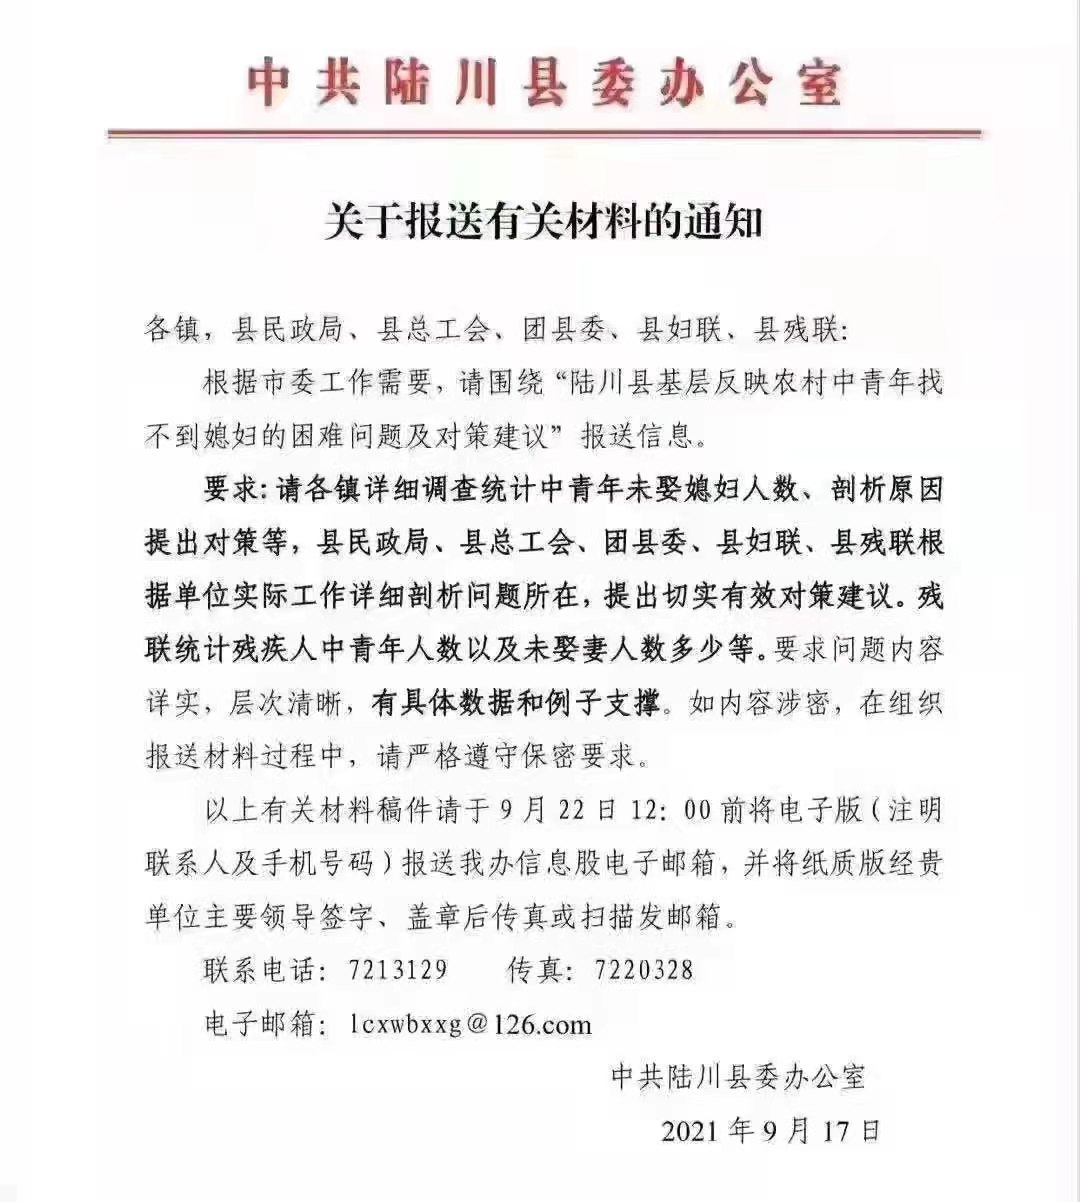 陆川县要求各镇以及县民政局等单位统计中青年未娶媳妇人数，并剖析原因，提出对策。（网络）